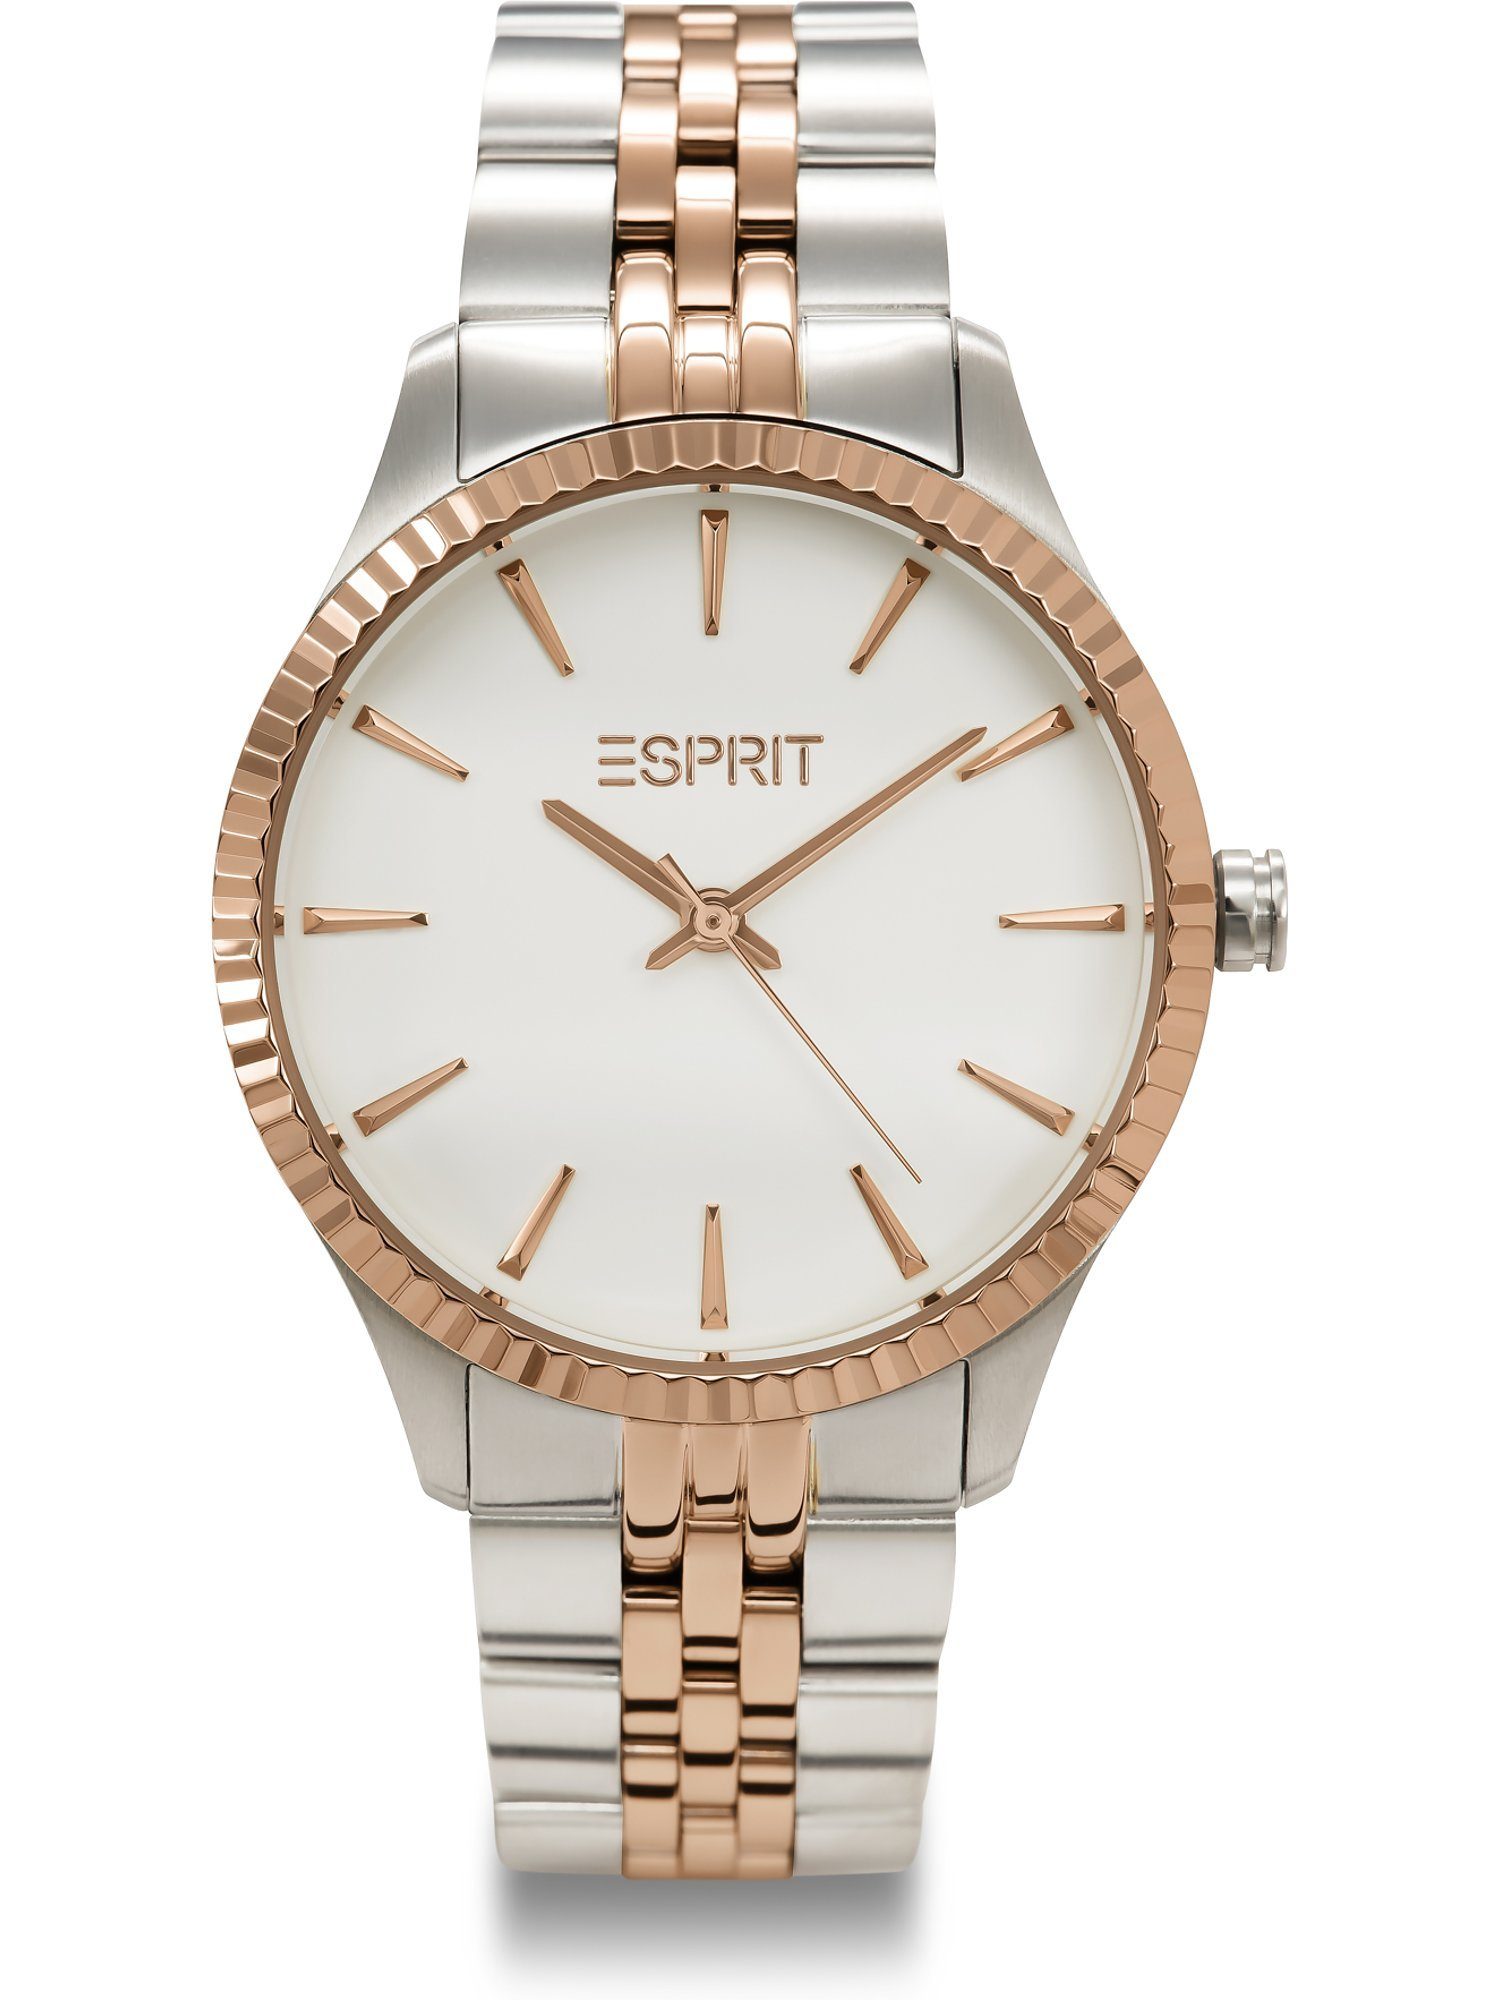 Esprit Quarzuhr ESPRIT Damen-Uhren Analog Quarz, Klassikuhr roségold, silber